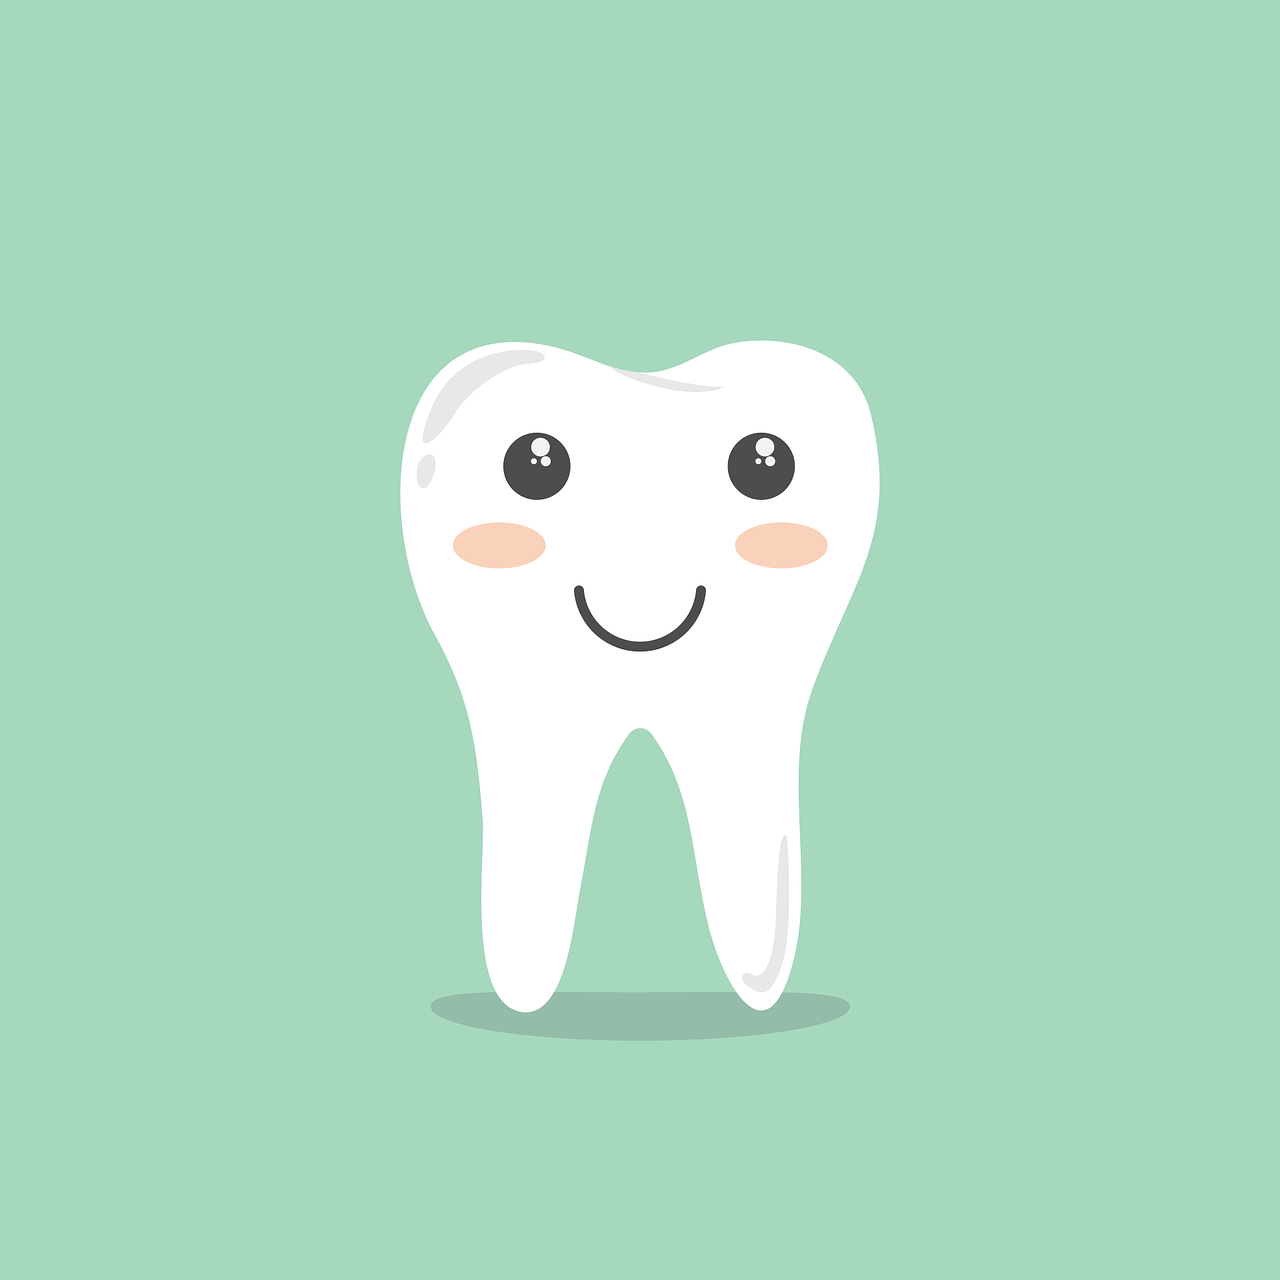 Tratamientos dentales con hidróxido de calcio y sus efectos